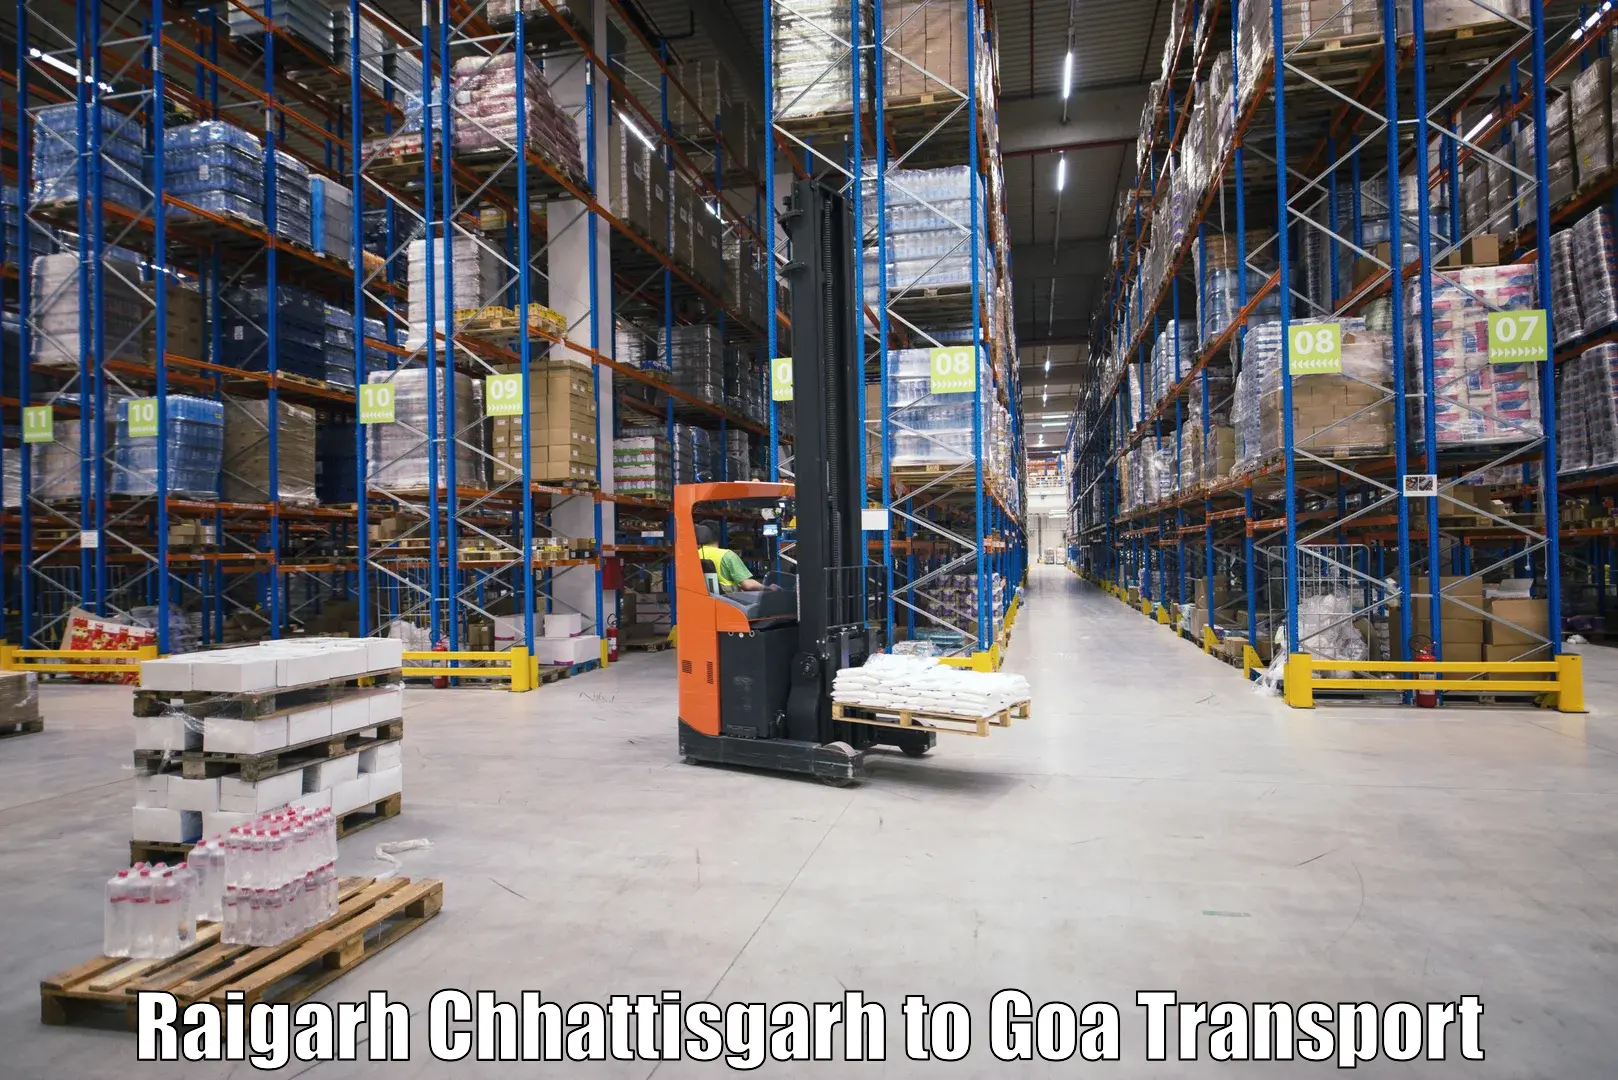 Interstate transport services Raigarh Chhattisgarh to Bicholim